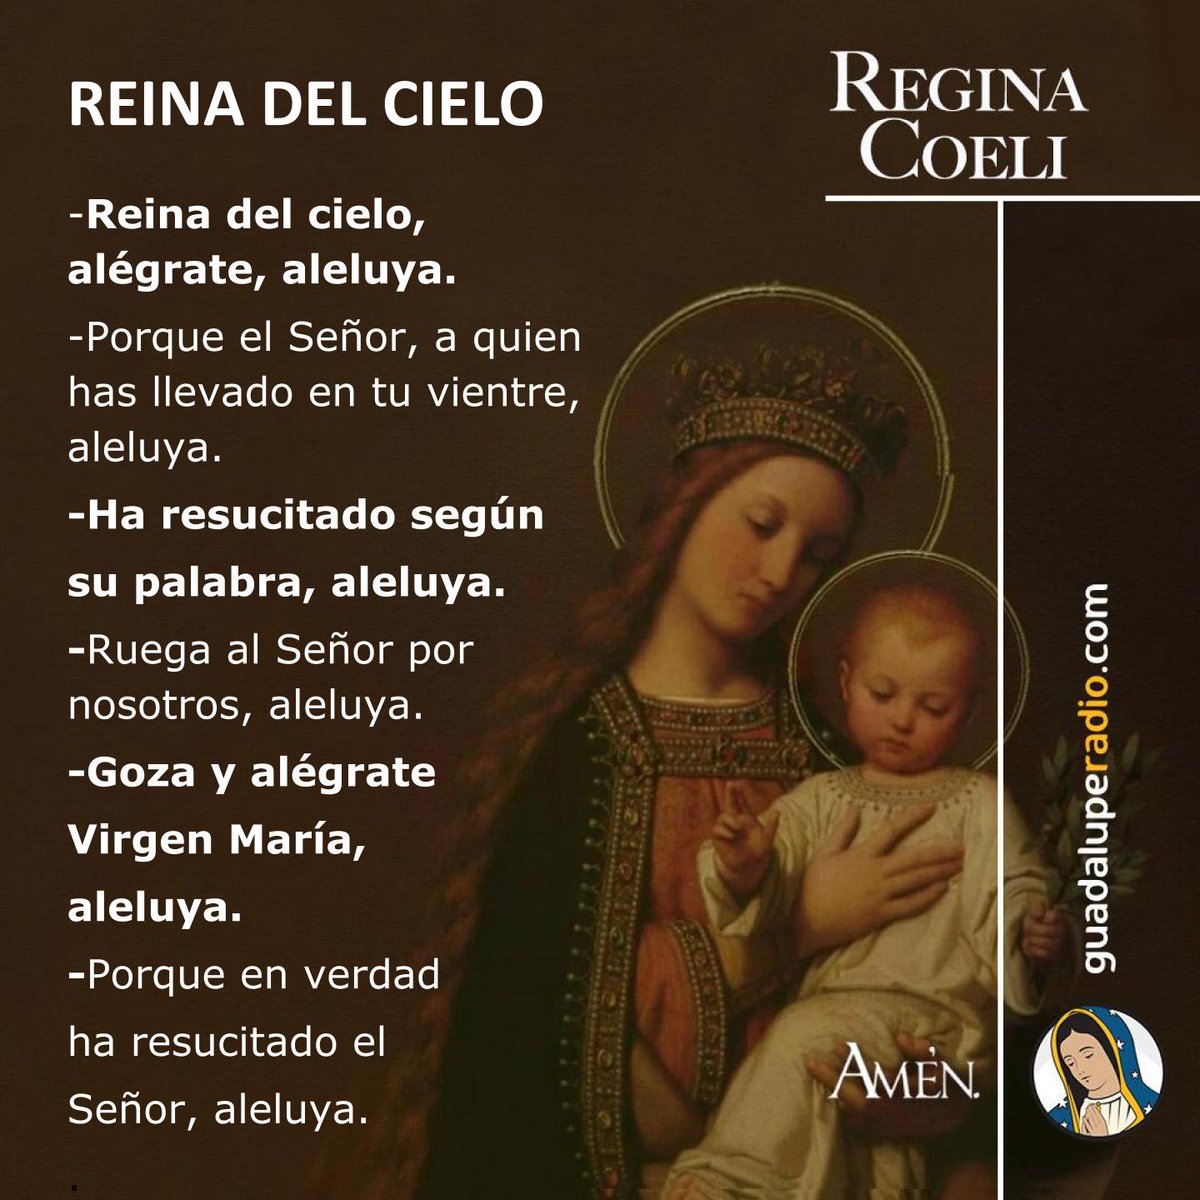 ¡Alégrate, Virgen María, que el Señor resucitó!
#ReginaCoeli
#GuadalupeRadio